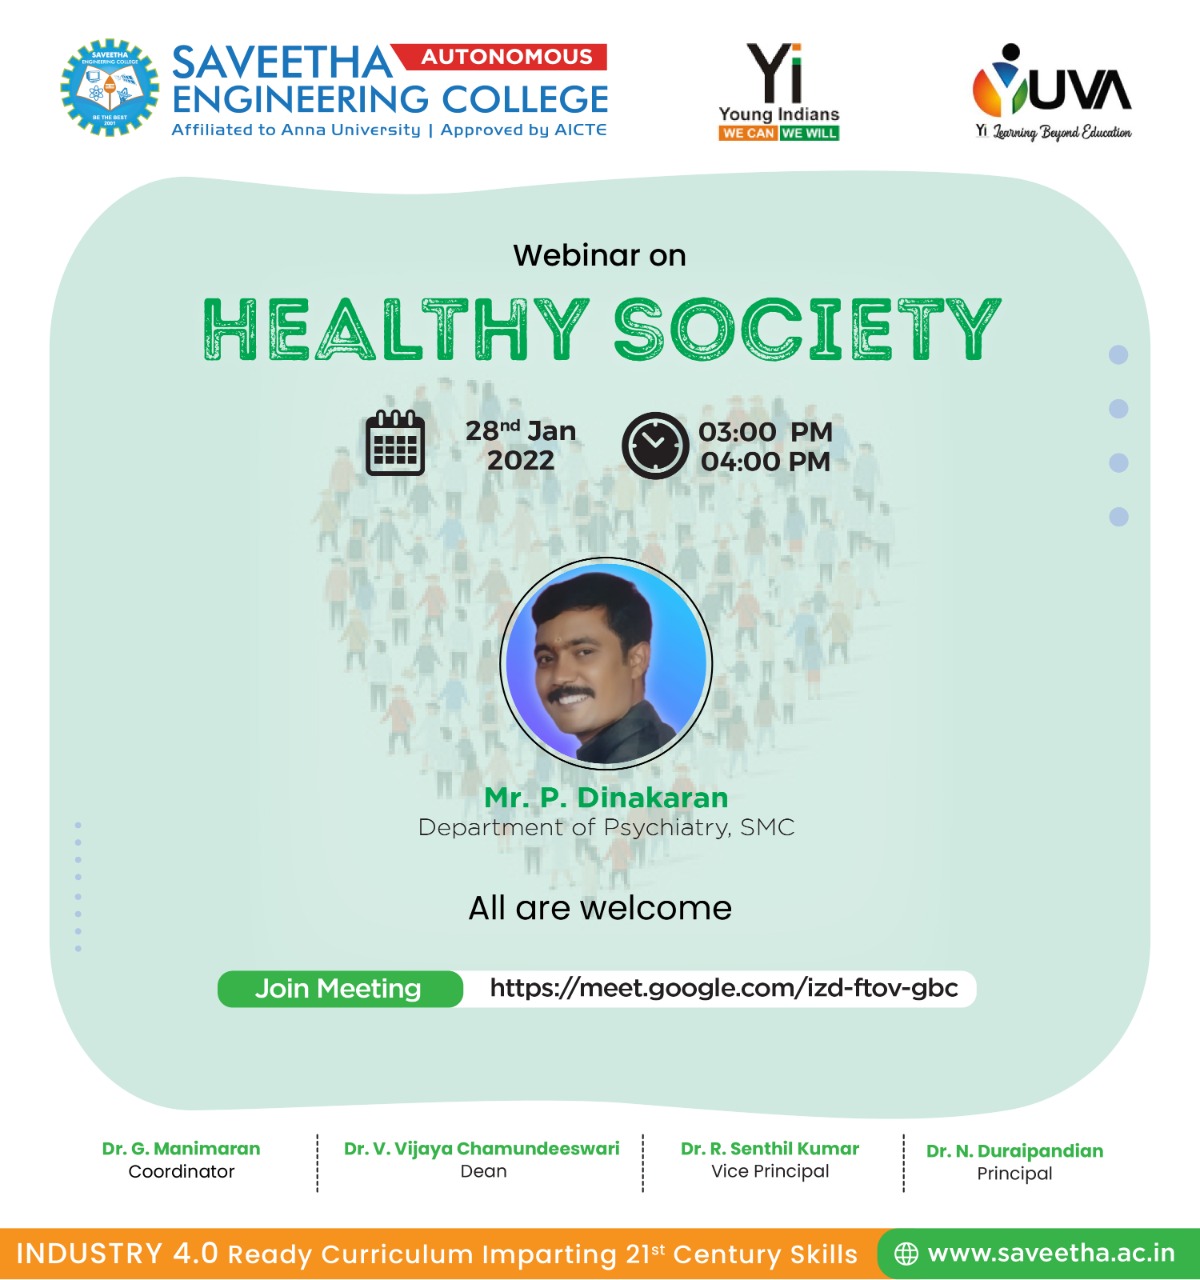 Webinar on Healthy Society organized by Saveetha Engineering College and Yi Yuva Club